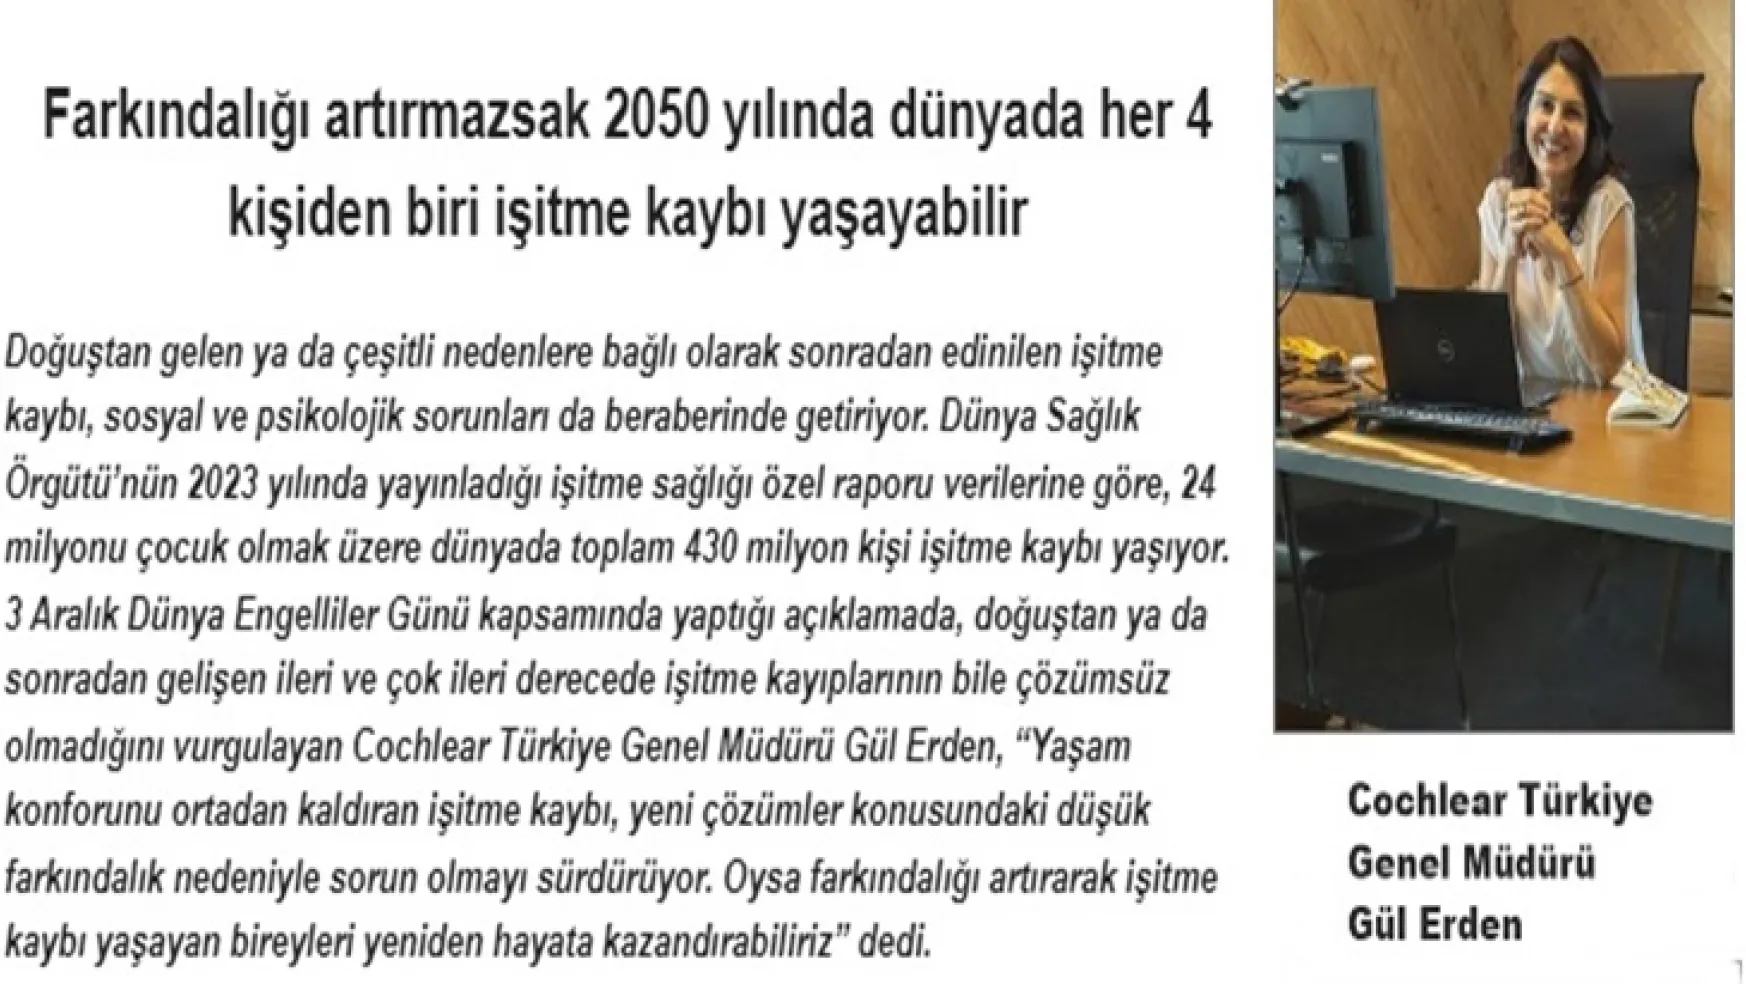 Cochlear Türkiye Genel Müdürü Gül Erden,işitme kaybının küresel maliyet yükünün bir trilyon dolara yaklaştığına dikkat çekti